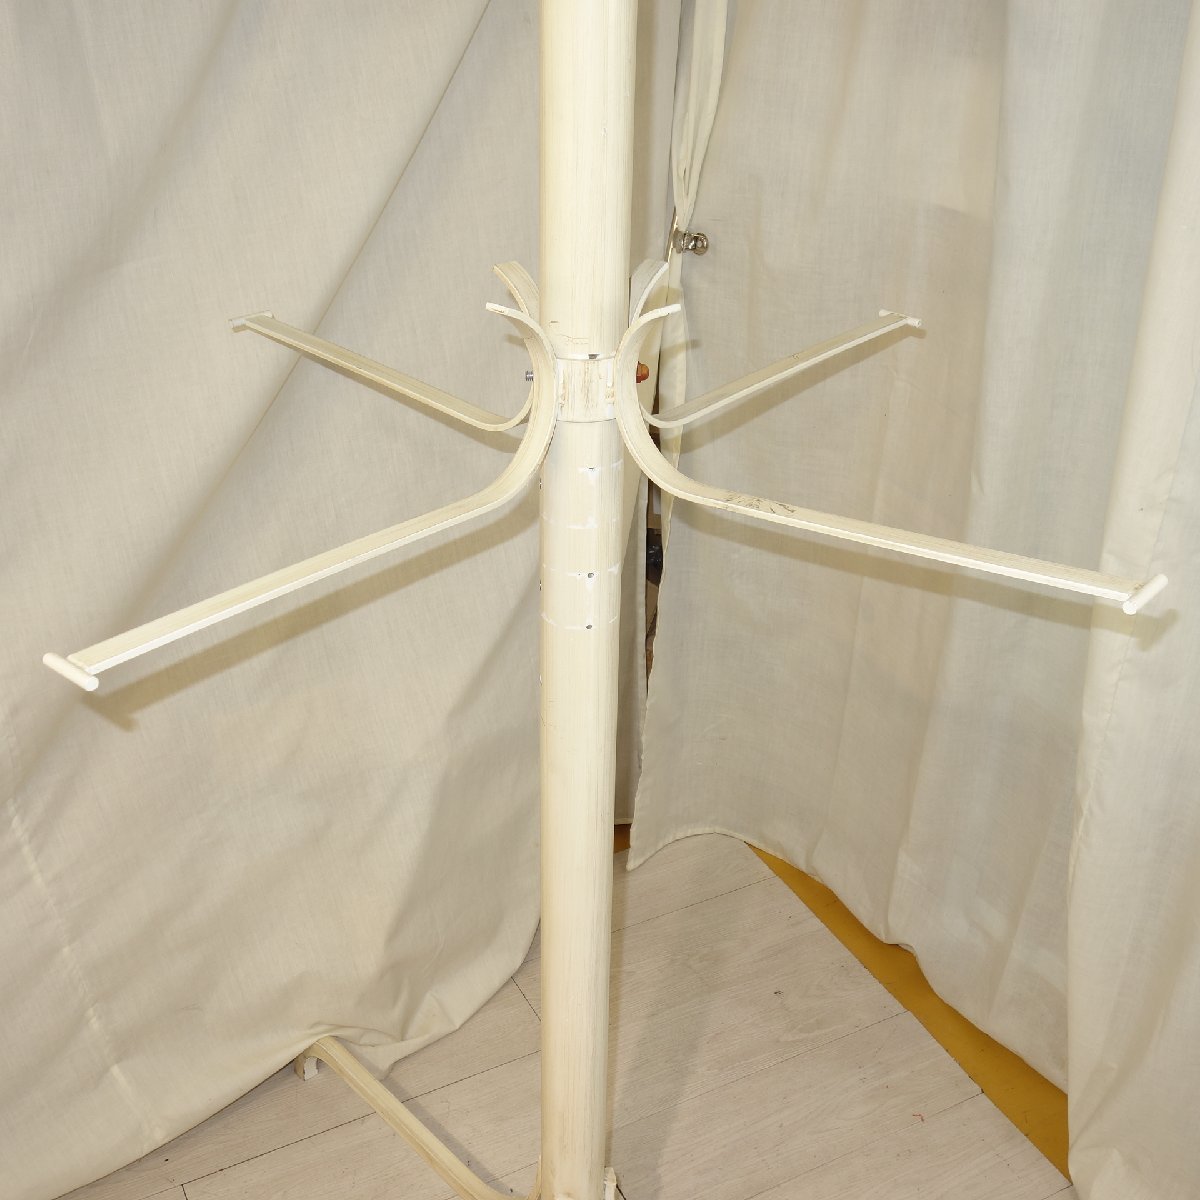  античный steel задний tree задний paul (pole) подставка вешалка tree задний для дисплея одежда смешанные товары магазин инвентарь магазин M66